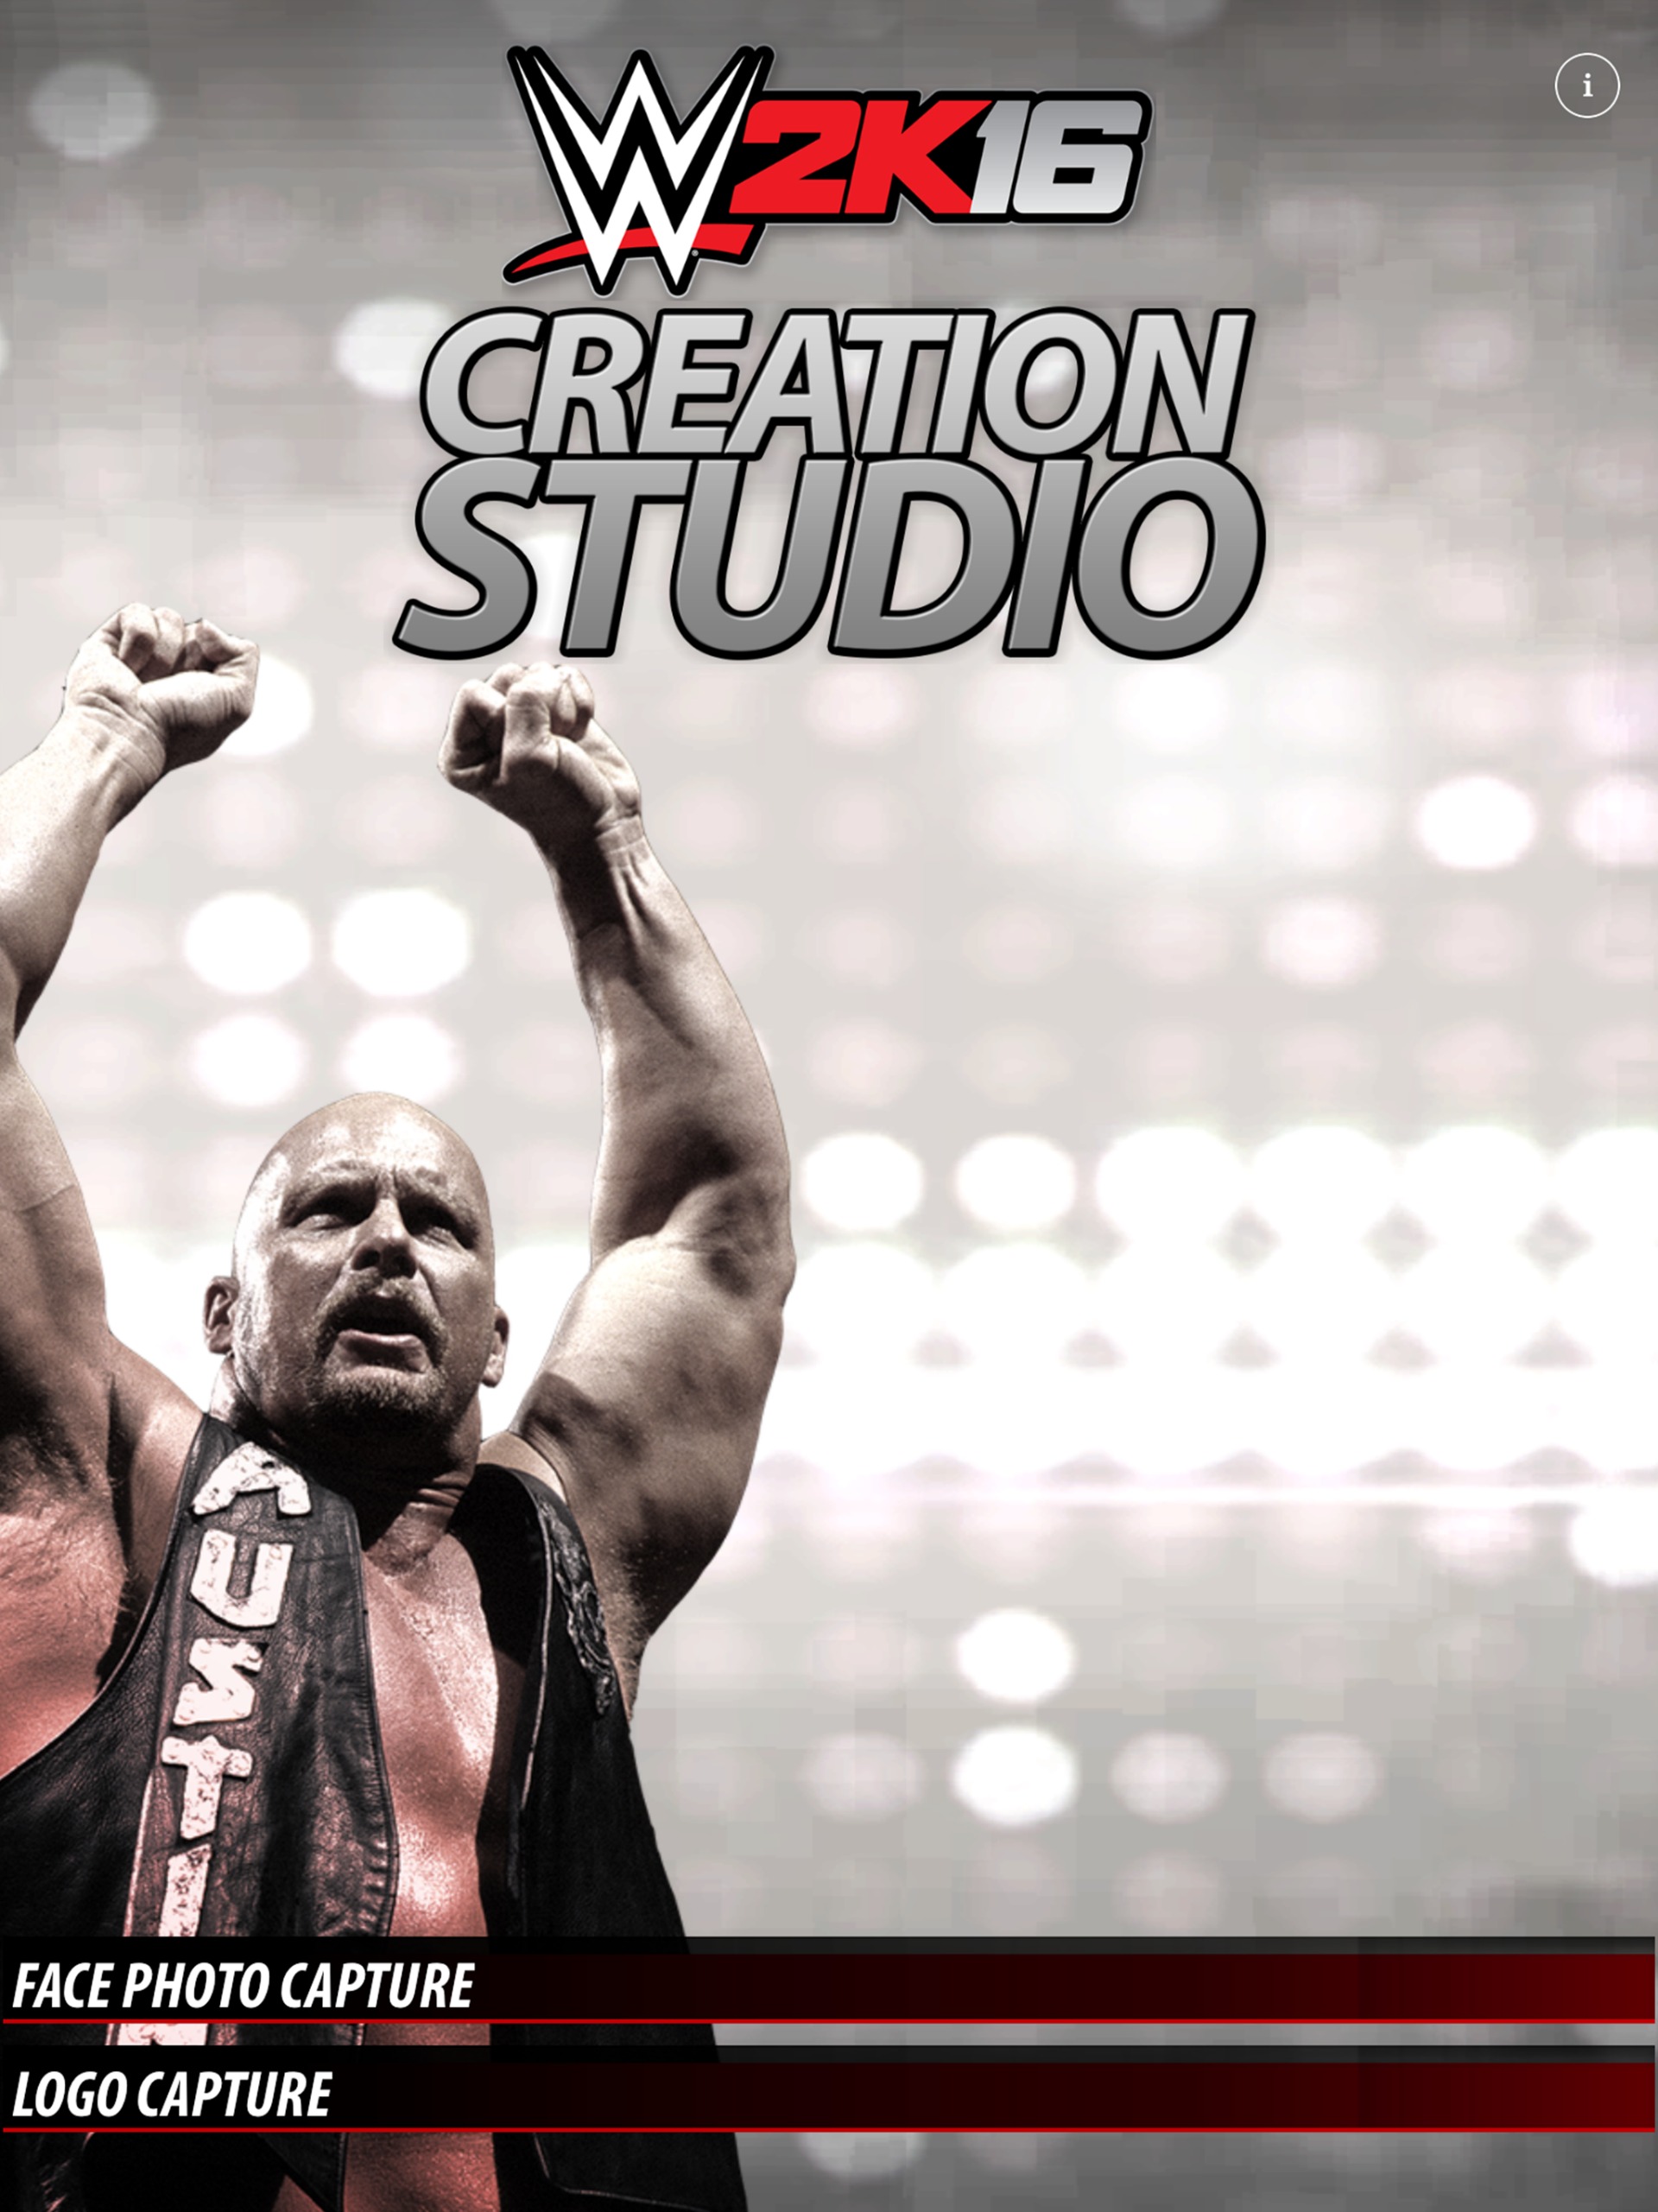 ungdomskriminalitet excitation ækvator The WWE 2K16 Creation Studio App Is Out Now!